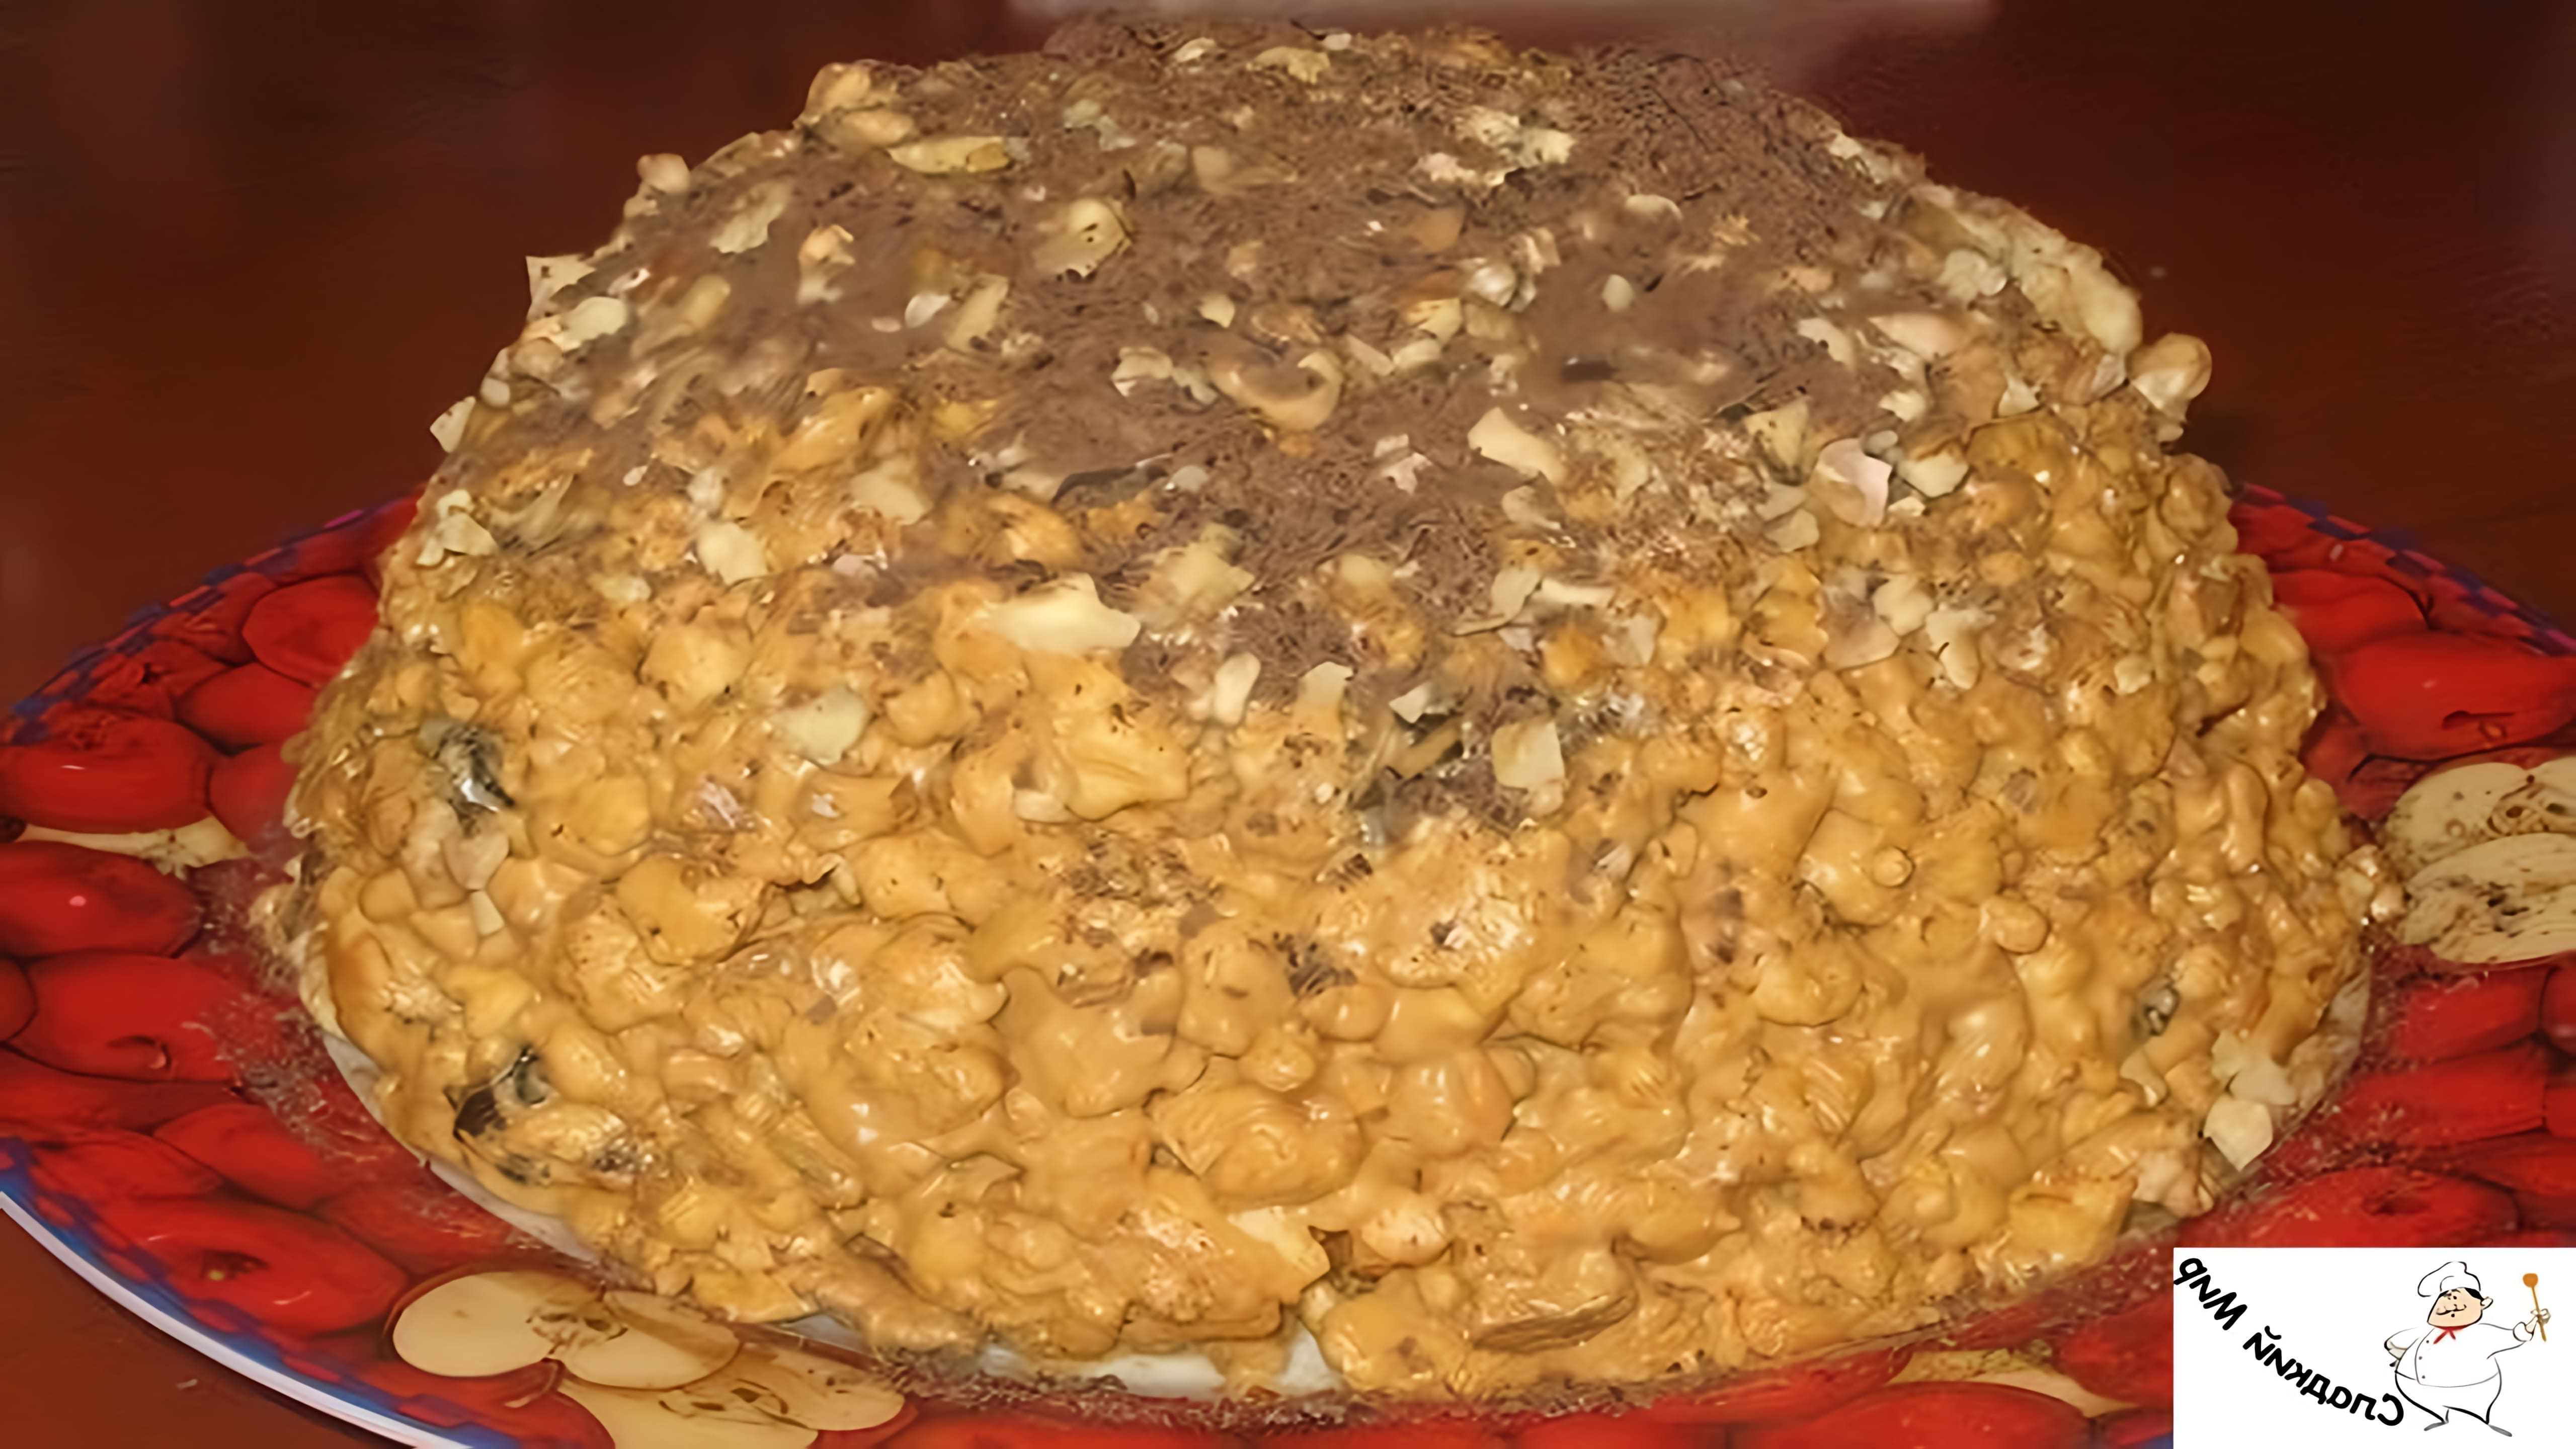 Торт "Муравейник" с грецкими орехами - это вкусное и оригинальное блюдо, которое можно приготовить в домашних условиях